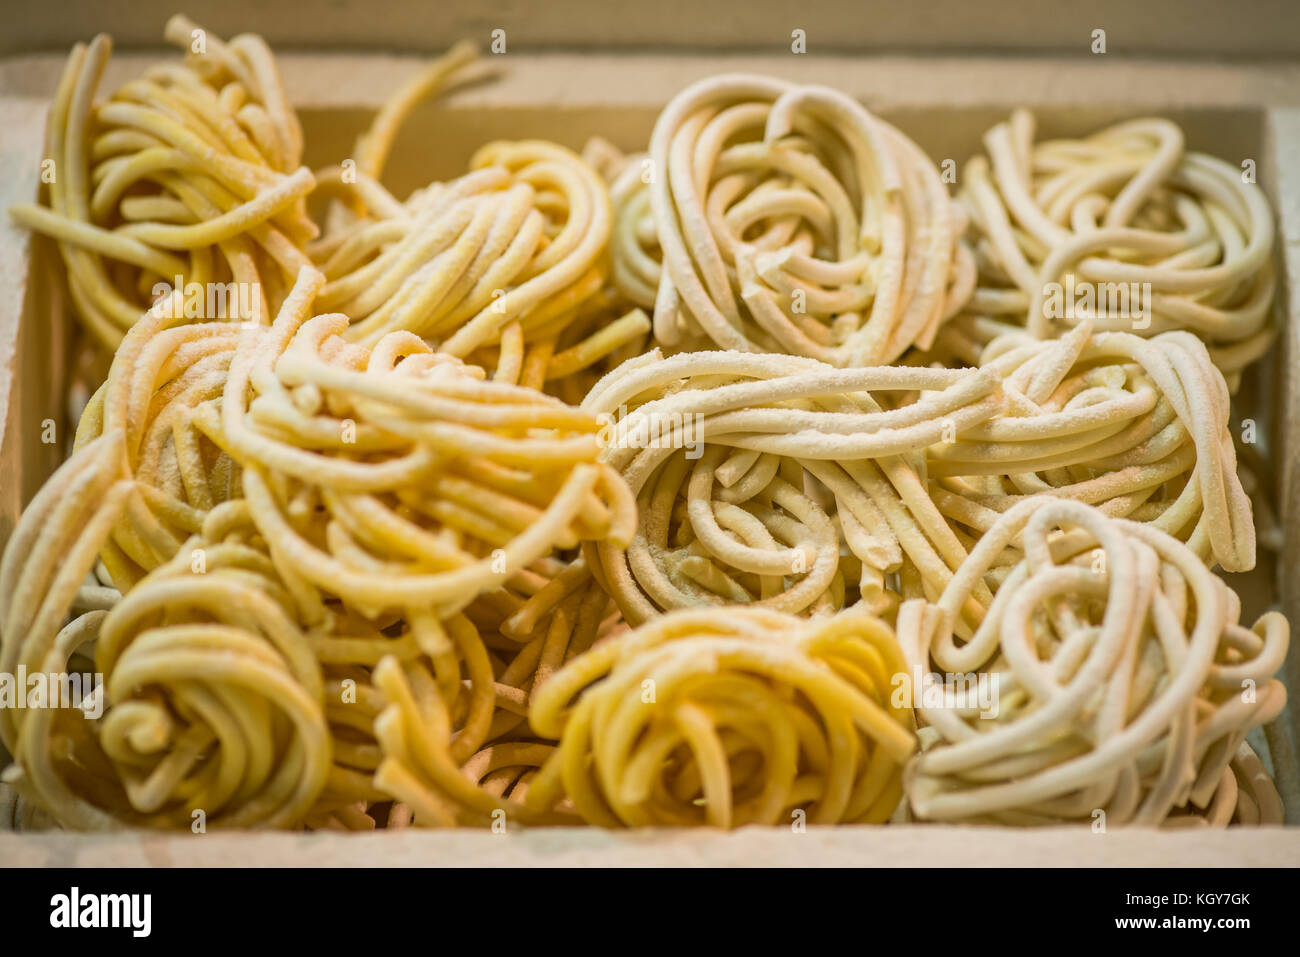 Italienische gefroren spaghetti Pasta - zubereitete Speisen Zutaten Stockfoto